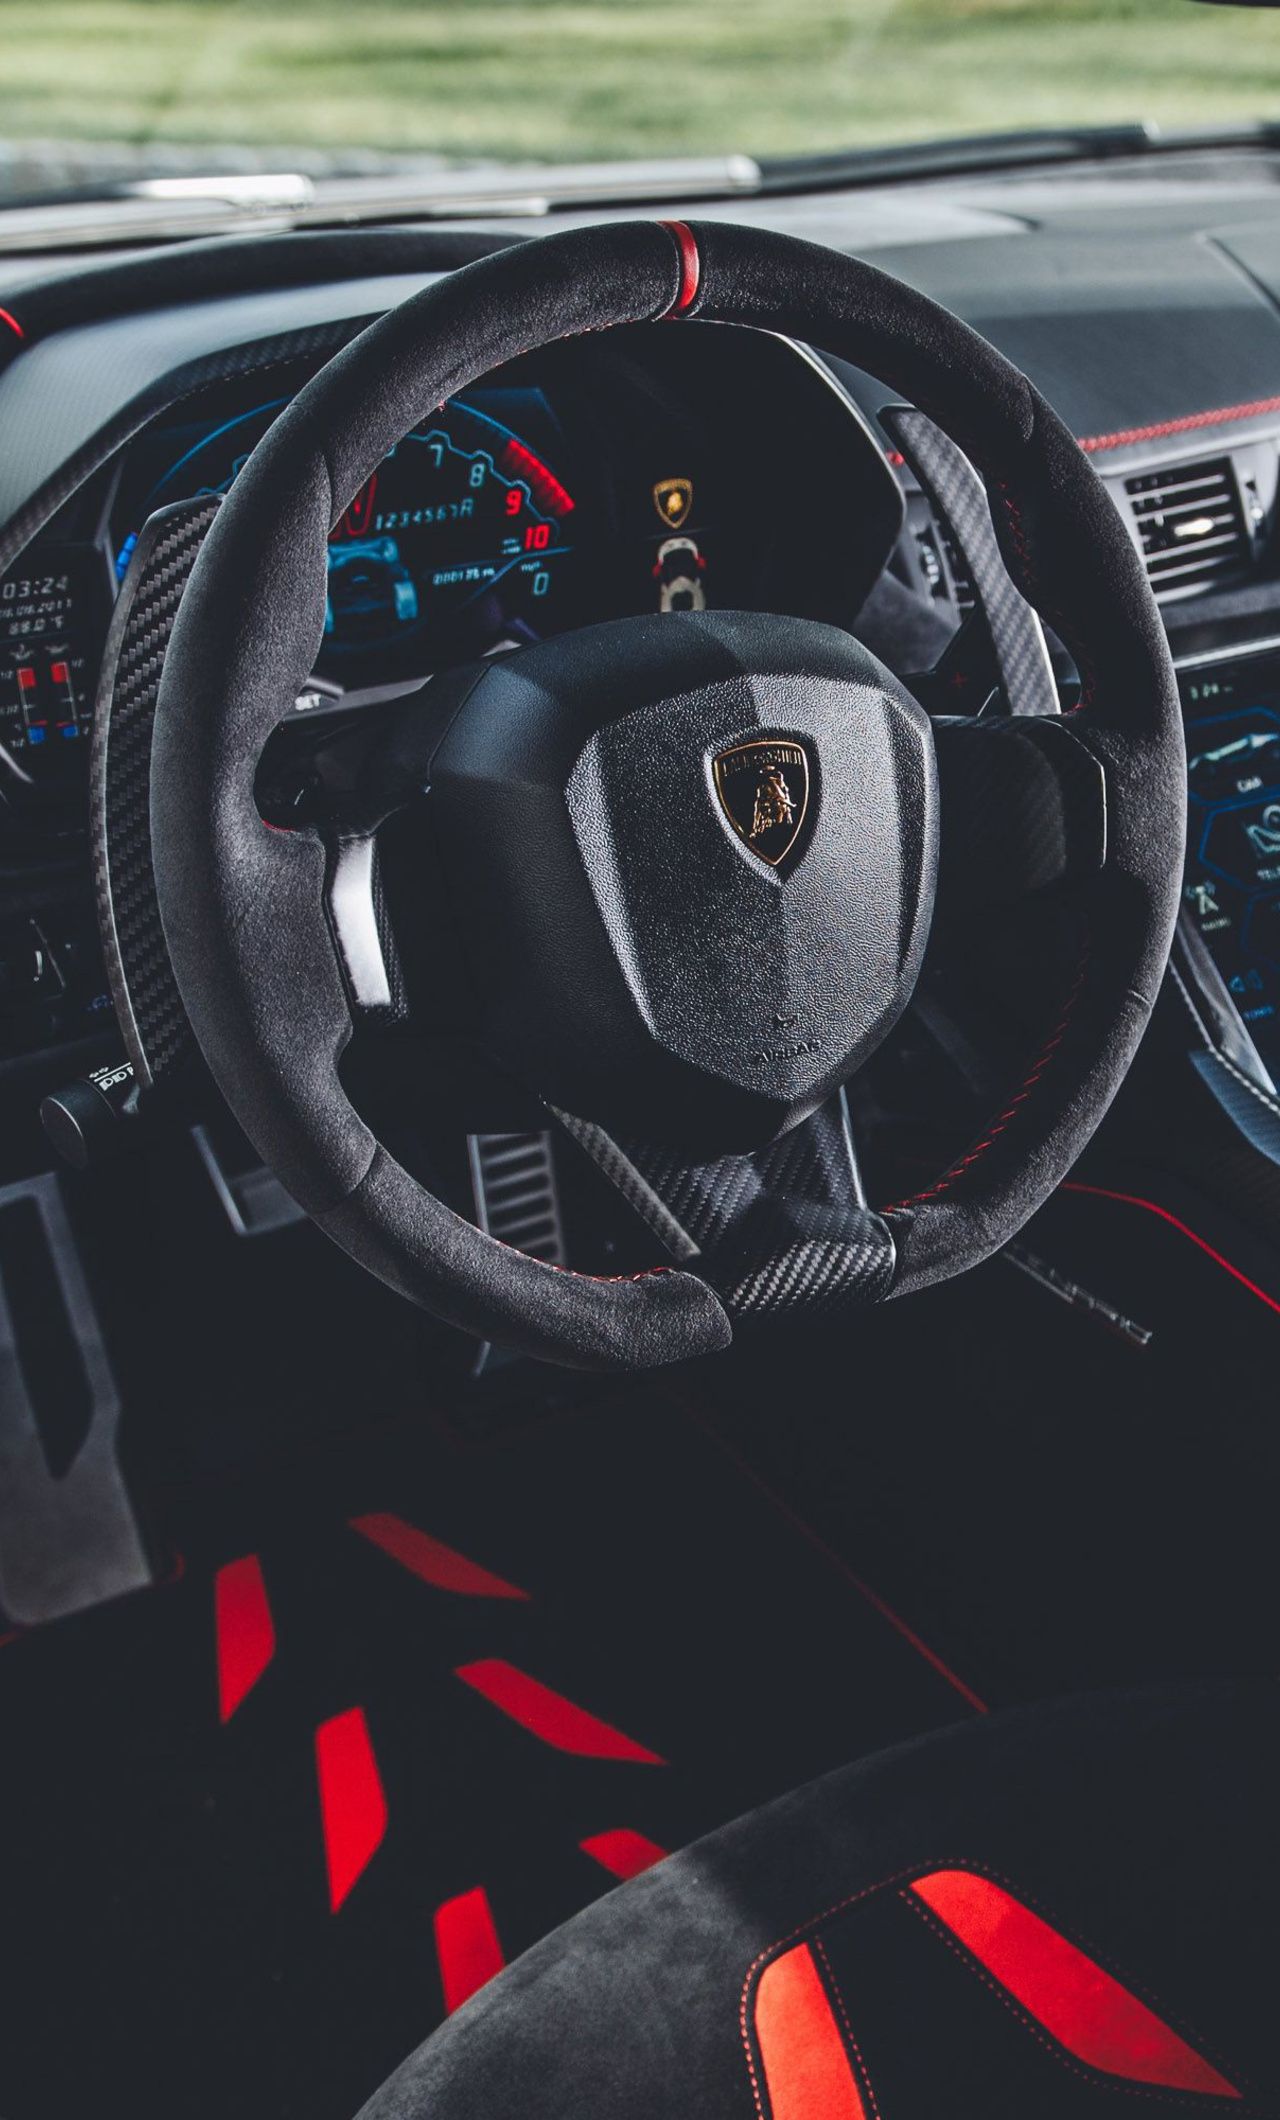 Lamborghini Centenario Coupe Interior iPhone HD 4k Wallpaper, Image, Background, Photo and Picture